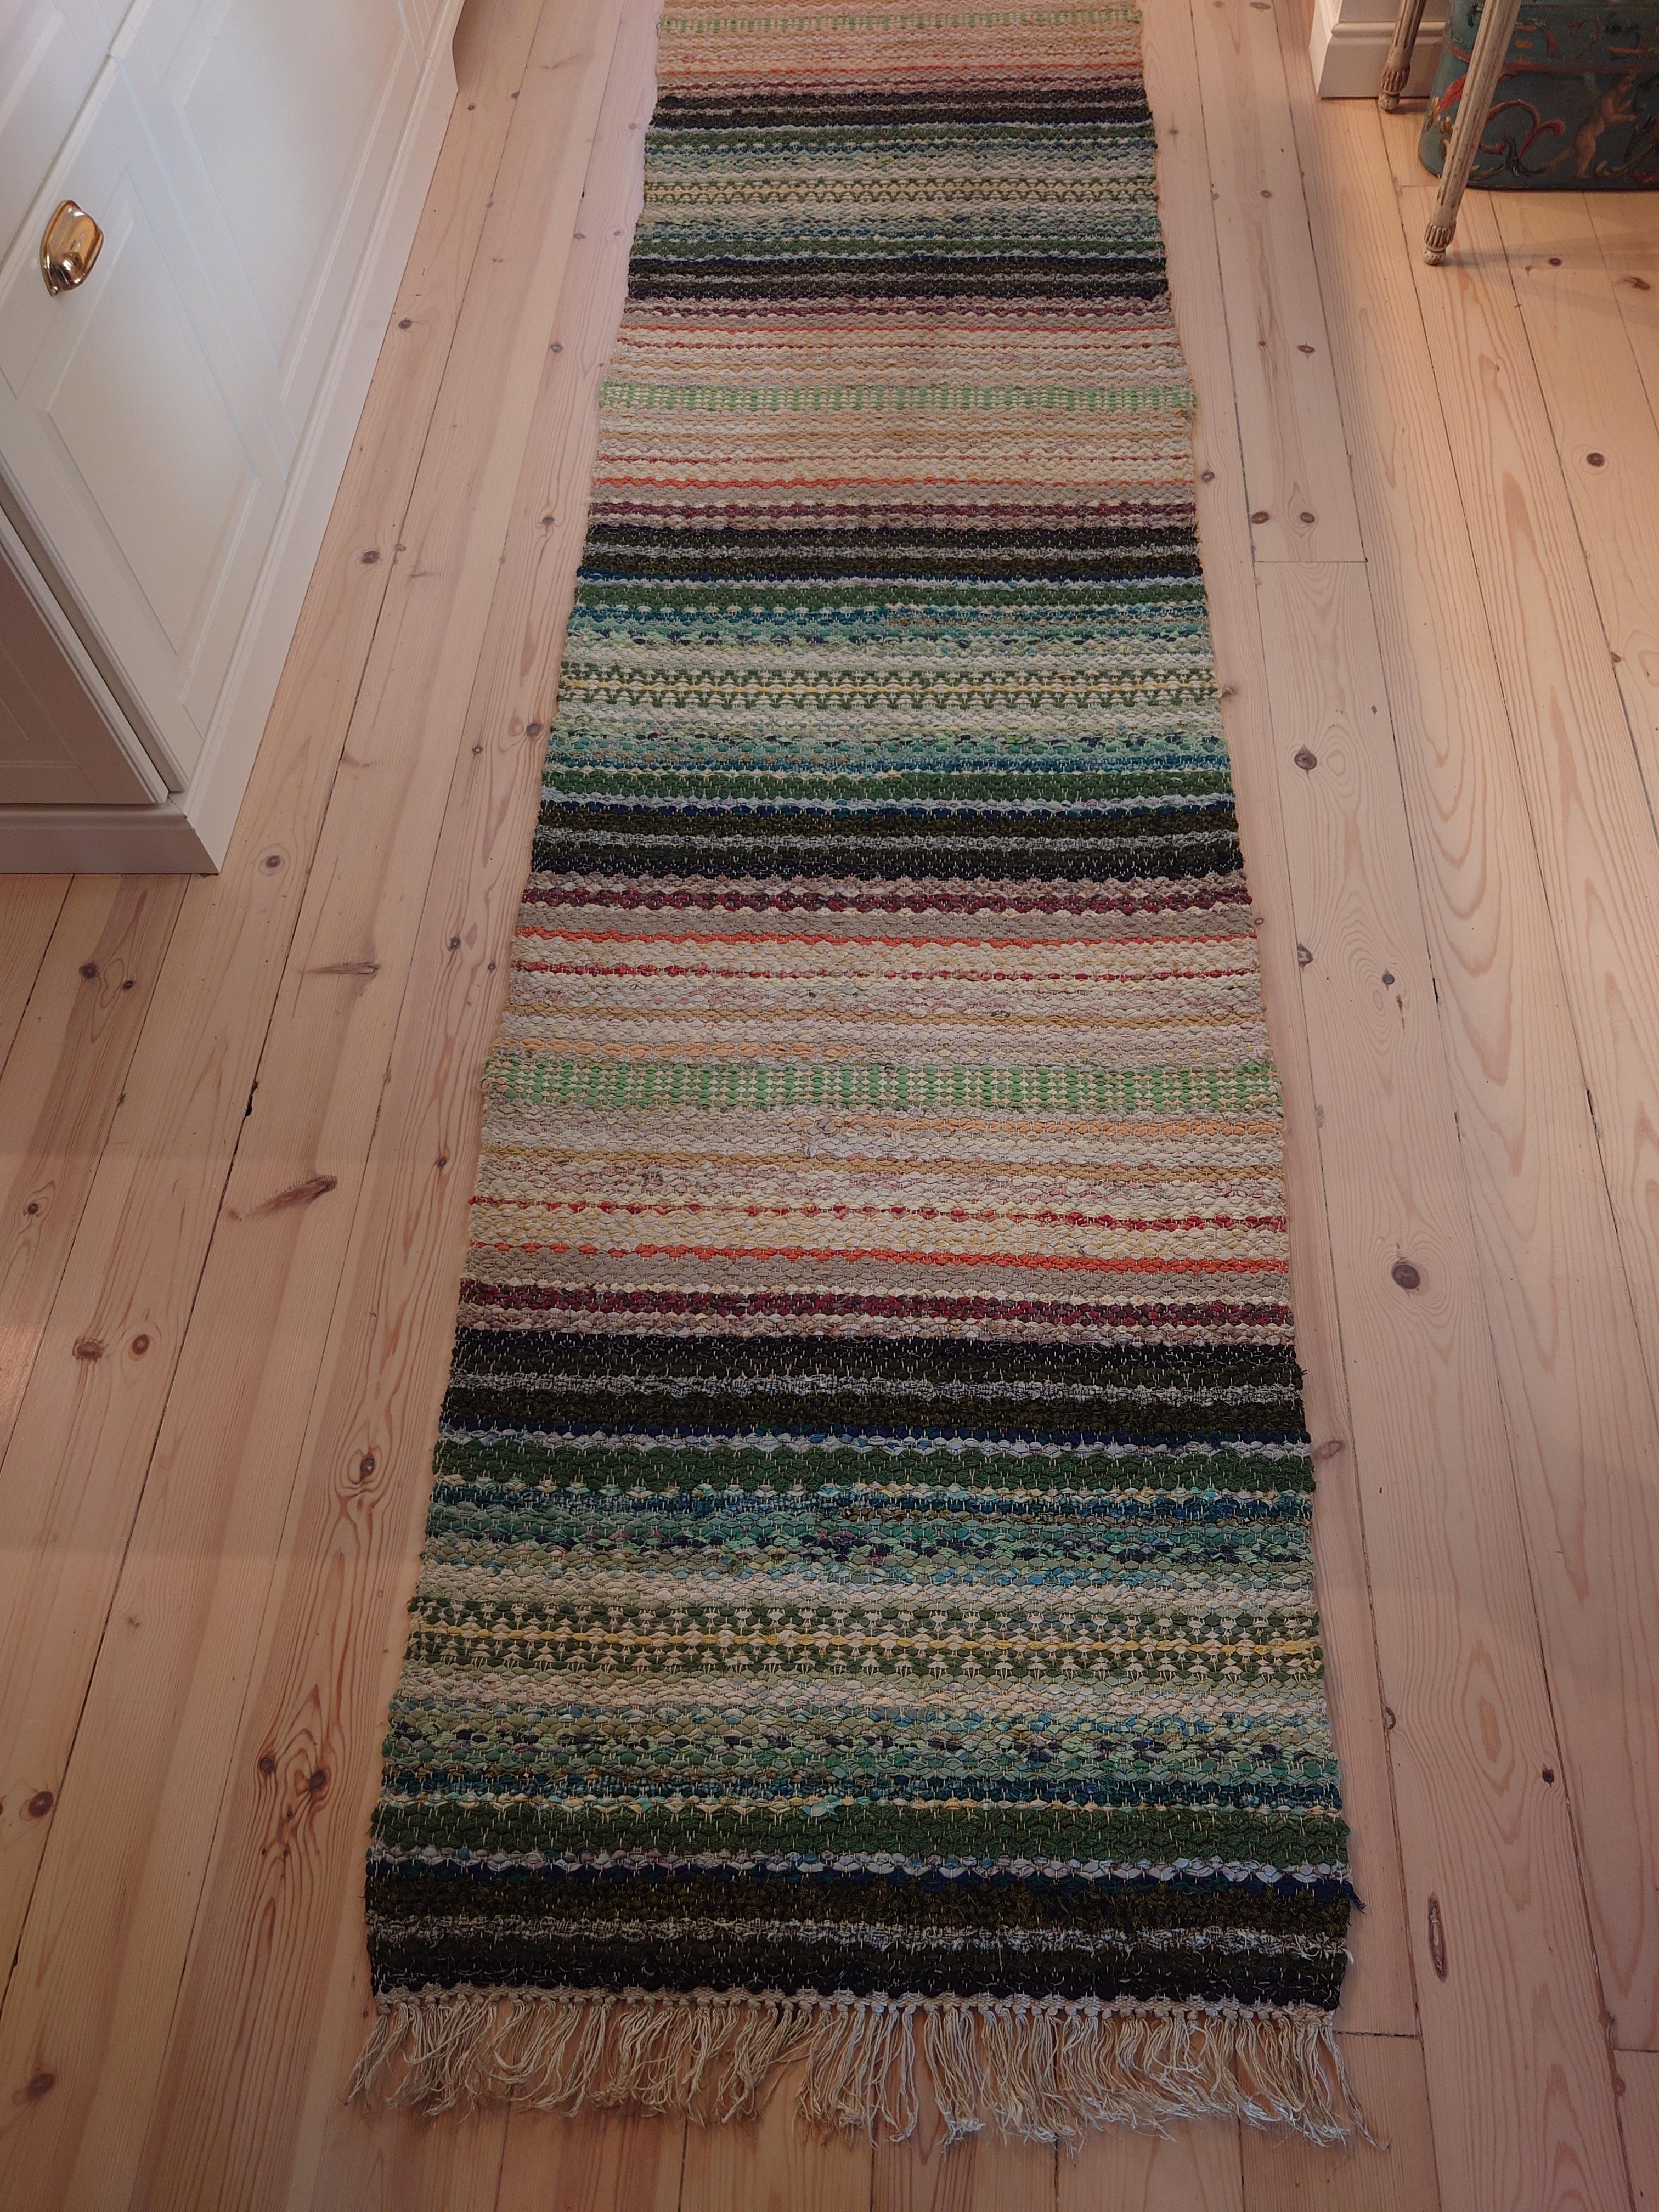 Ein fantastischer schwedischer Fleckerlteppich in schönen Farben und Mustern.
Handgewebt in Boden Nordschweden .
Der Teppich ist frisch gewaschen.
Vintage & antike schwedische Rag Rugs aus Schweden gibt es in einer Vielzahl von Farben und Mustern.